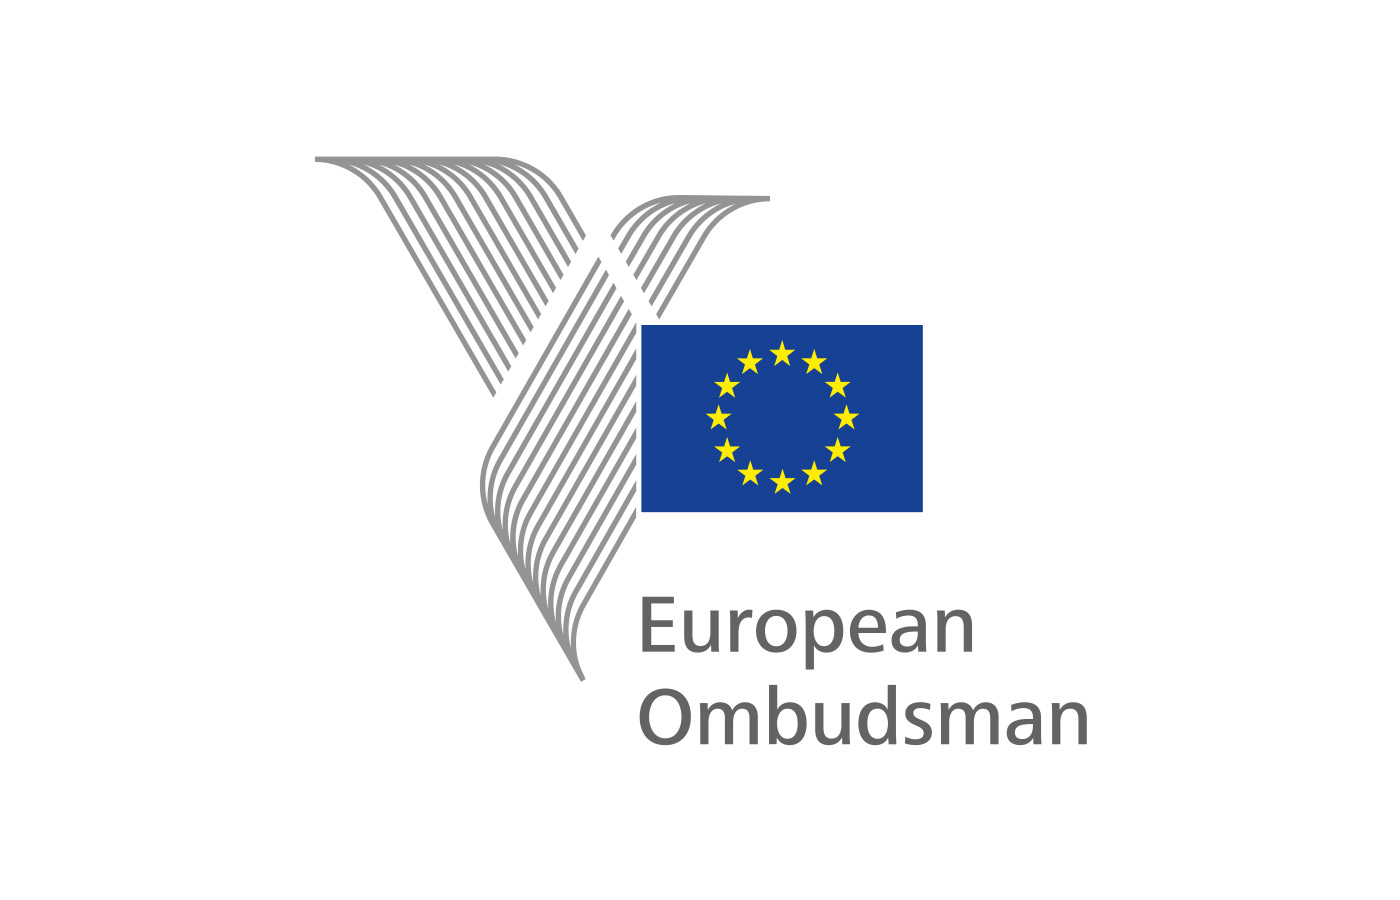 Webpagina van de Ombudsman